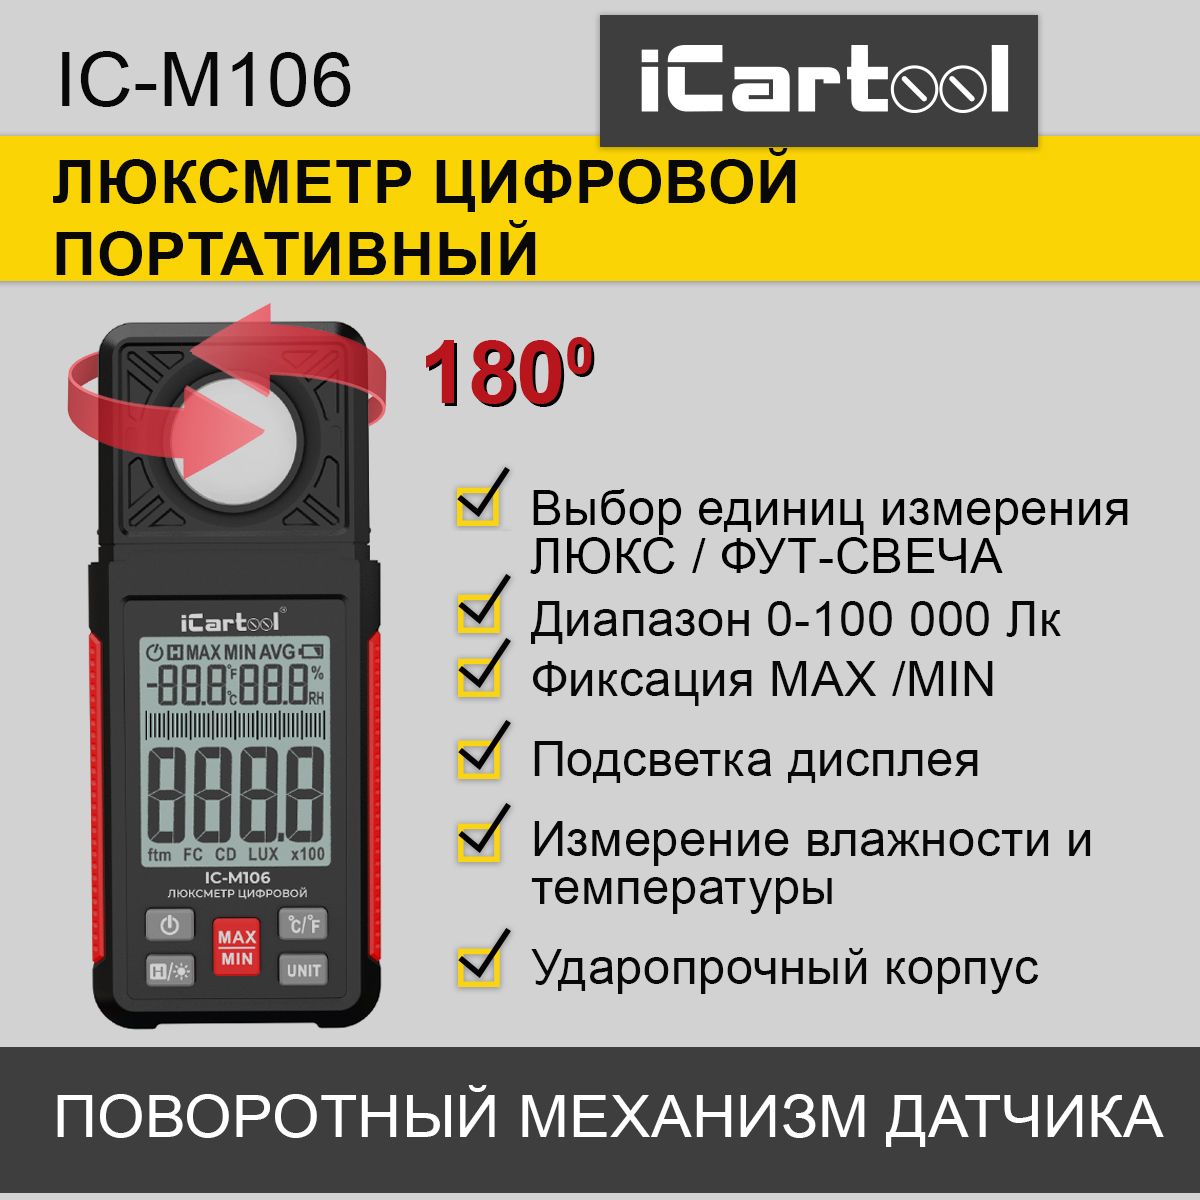 Люксметр цифровой iCartool IC-M106 люксметр сем